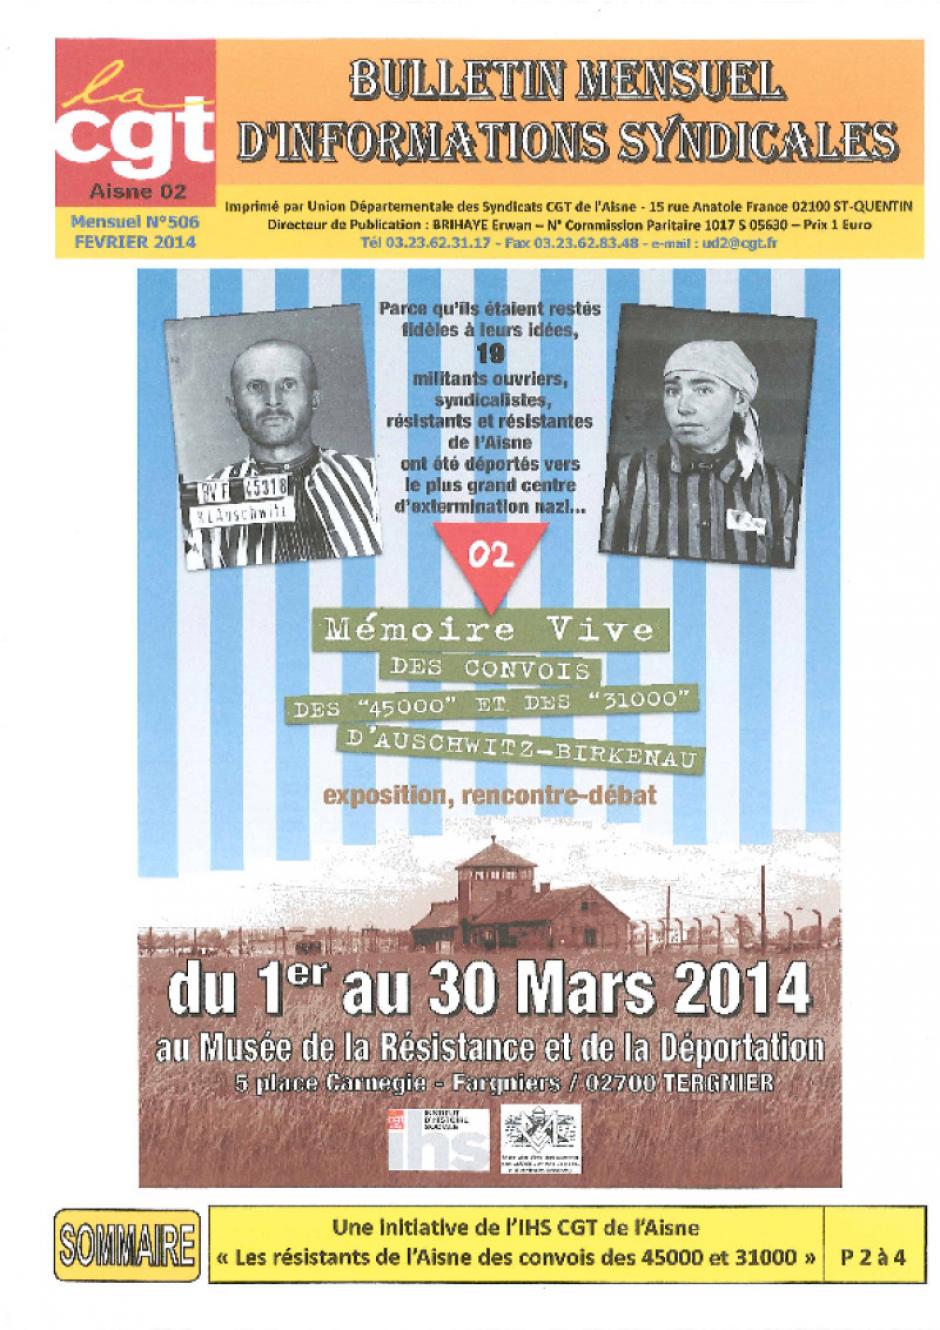 Du 1er au 30 mars, Tergnier - IHS CGT Aisne & Mémoire Vive-Exposition sur les convois des 45000 et des 31000